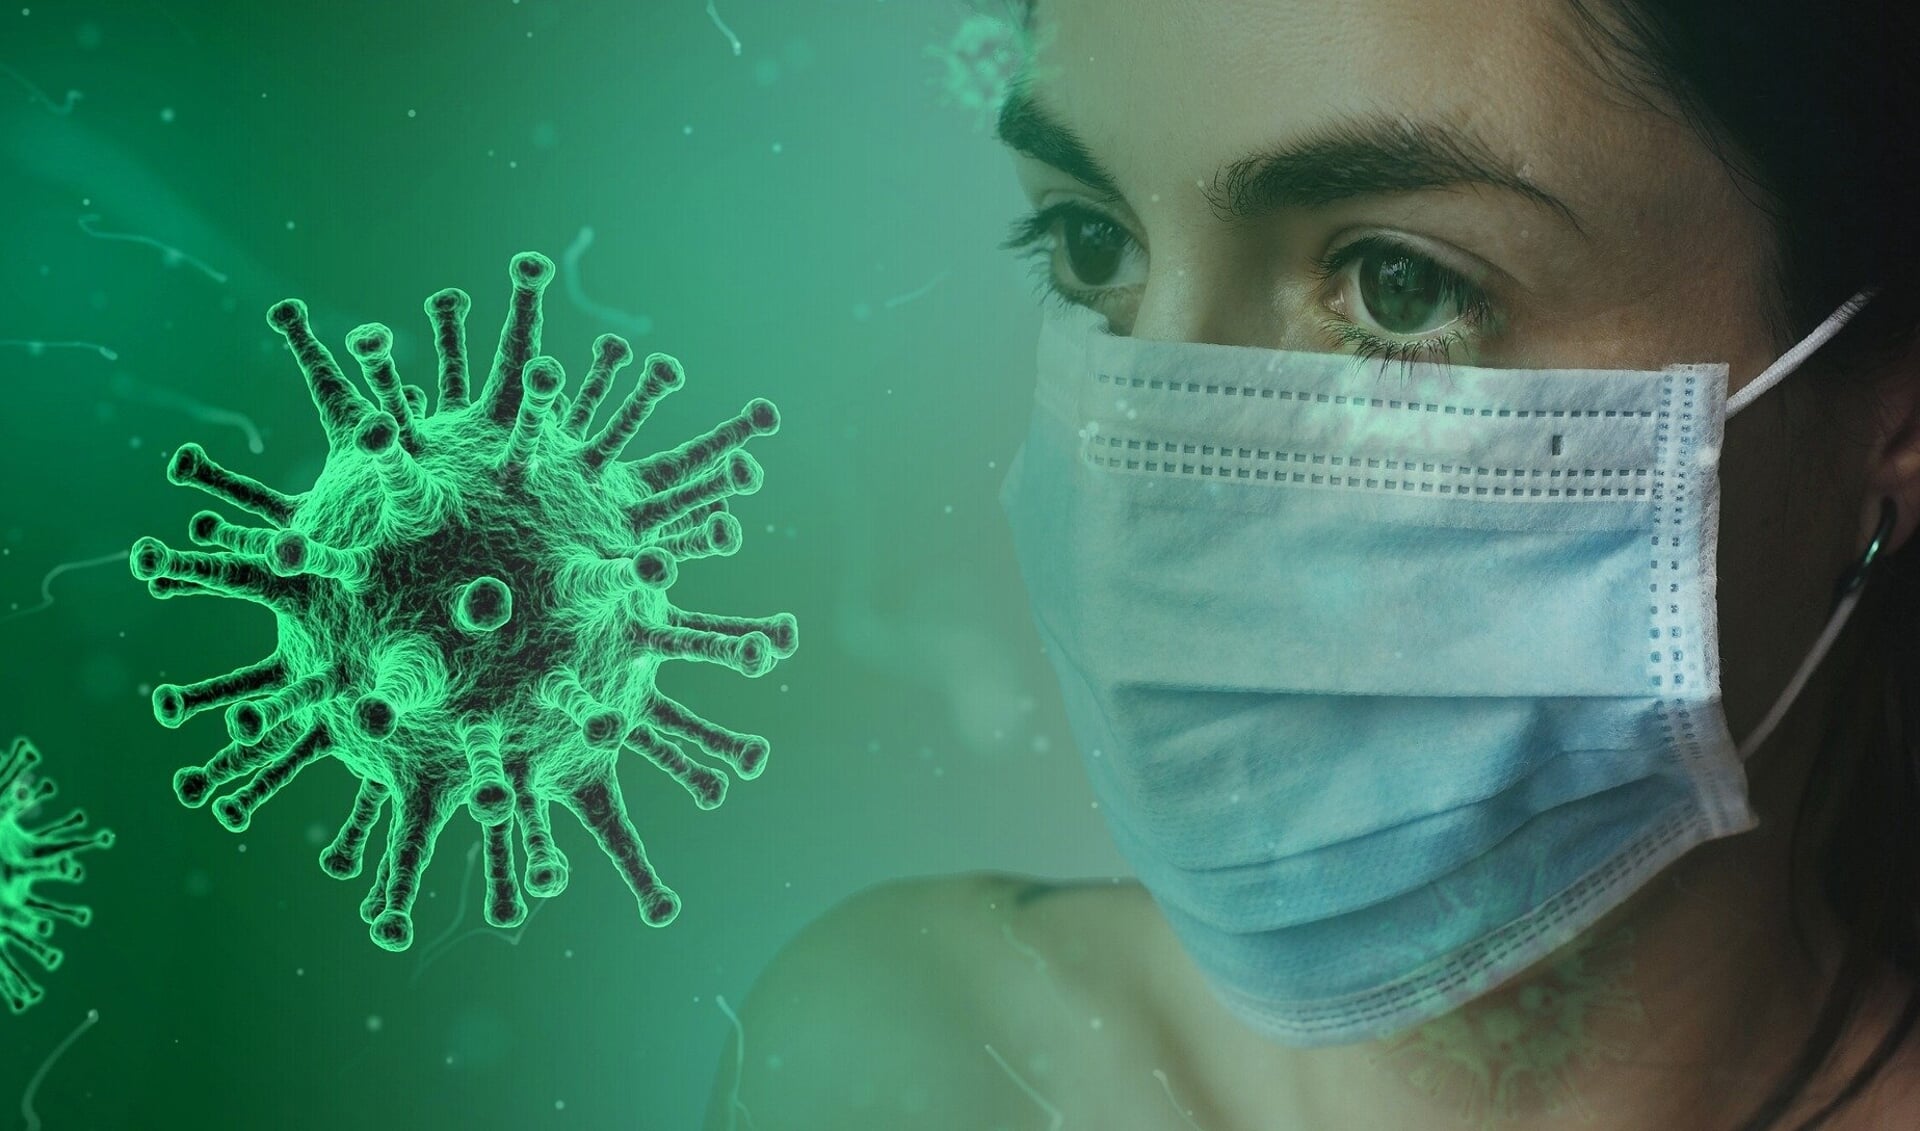 Tussen 12 en 25 januari werd bij een recordaantal van 4.134 inwoners van Amstelveen een besmetting met het coronavirus vastgesteld.